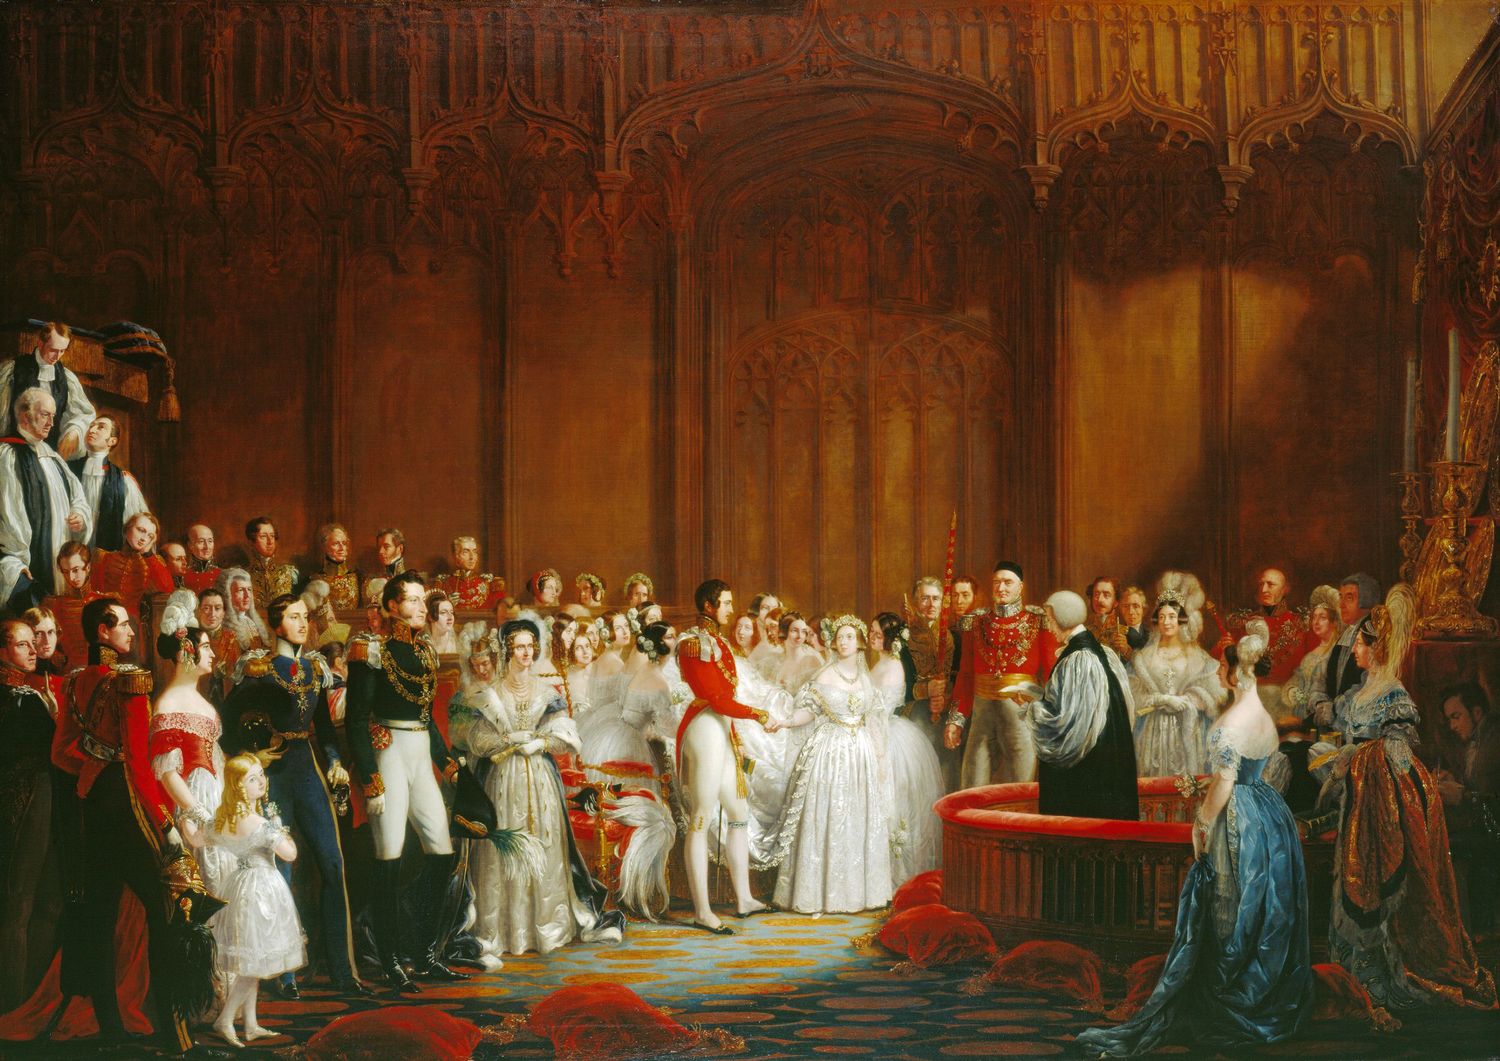 Đám cưới năm 1840 của nữ hoàng Anh Victoria với hoàng tử Albert